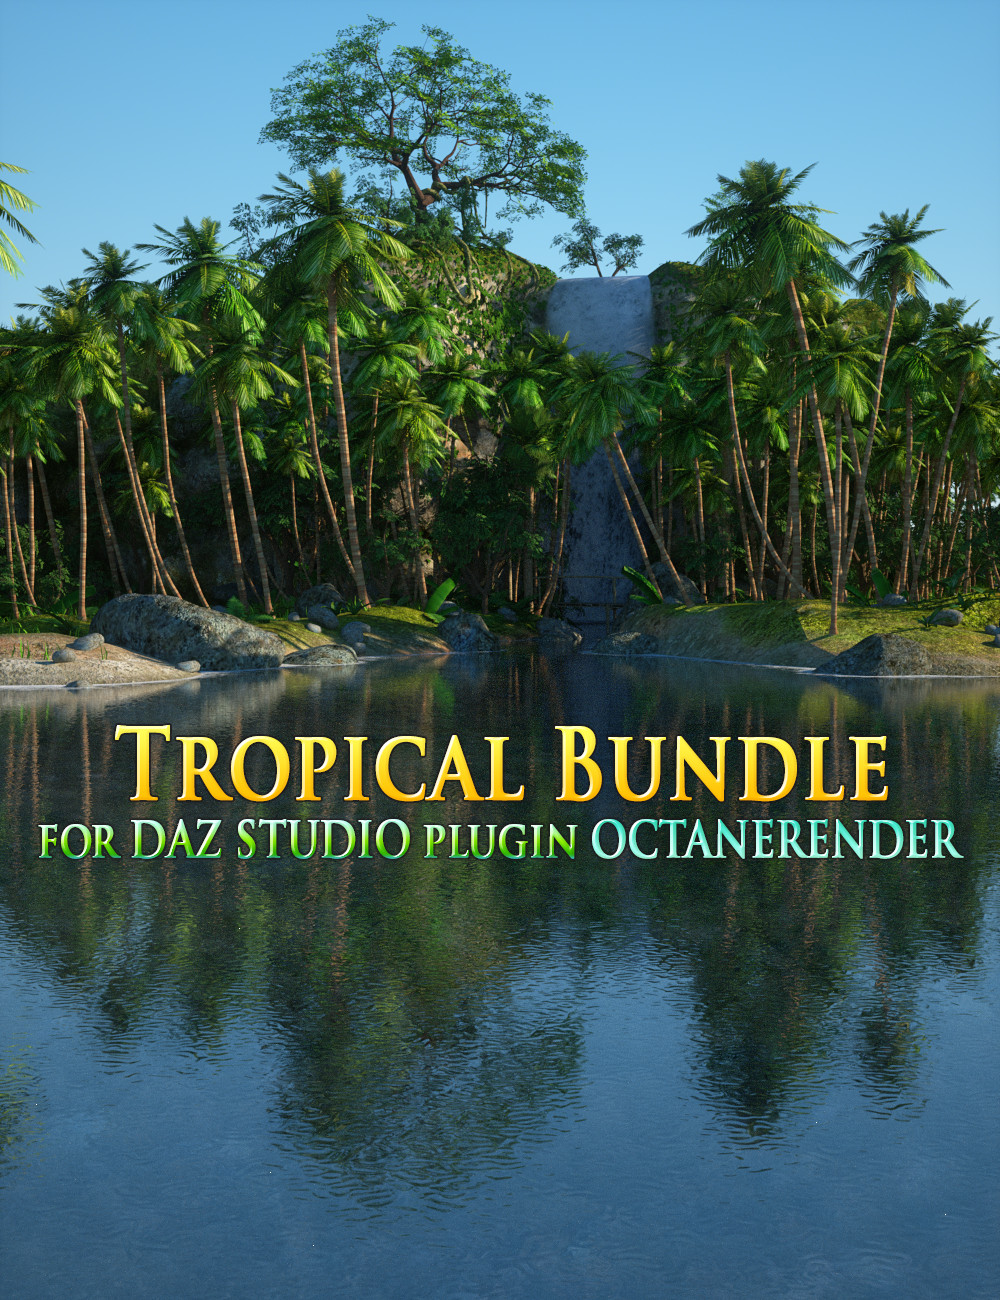 Tropical Bundle for DAZ Studio plugin OctaneRender by: Andrey Pestryakov, 3D Models by Daz 3D